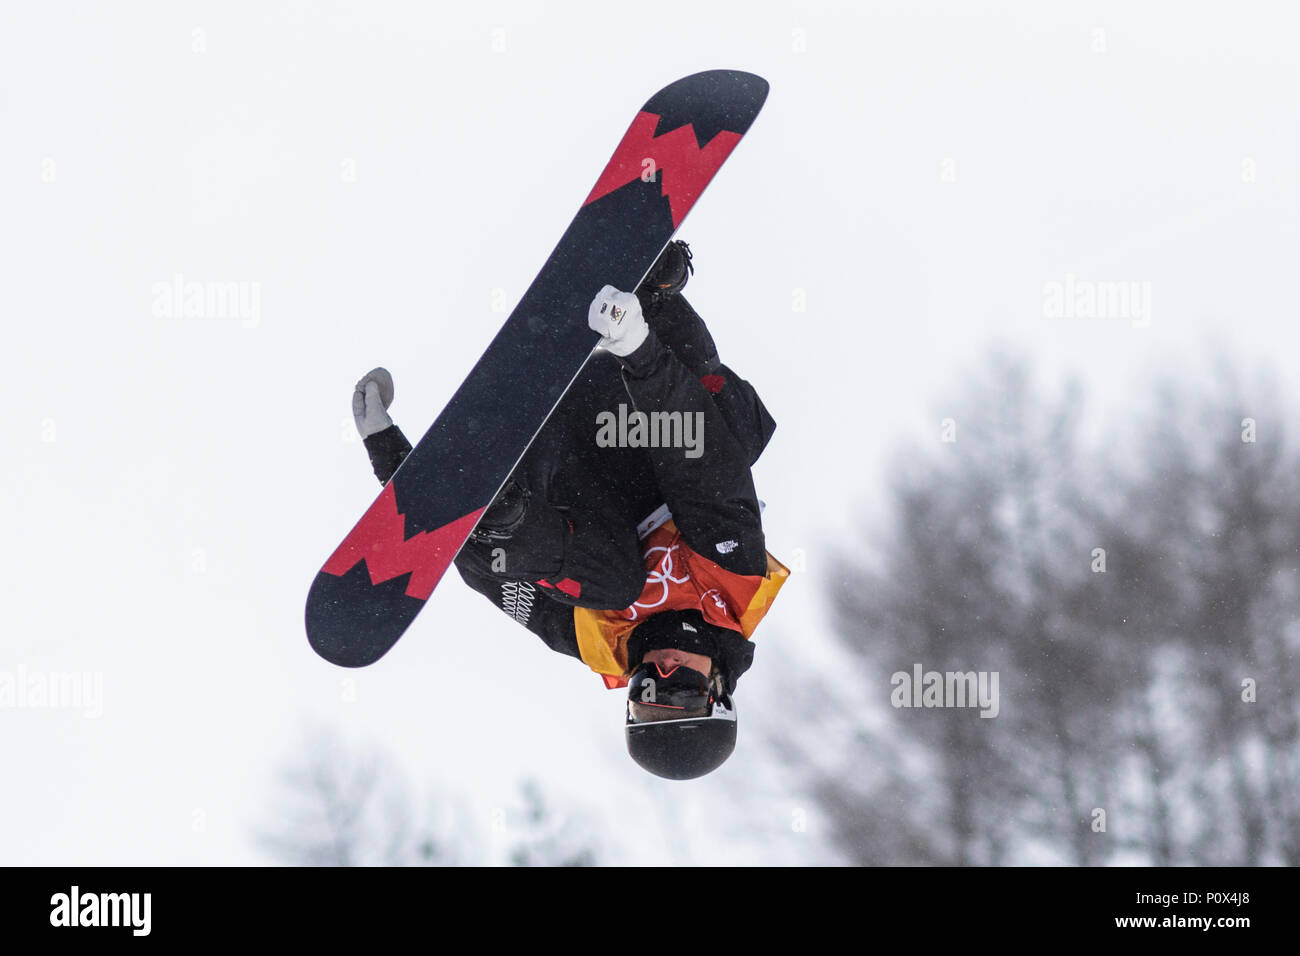 Rakai Tait (NZL) en compétition dans l'épreuve du snowboard Half Pipe la qualification aux Jeux Olympiques d'hiver de PyeongChang 2018 Banque D'Images